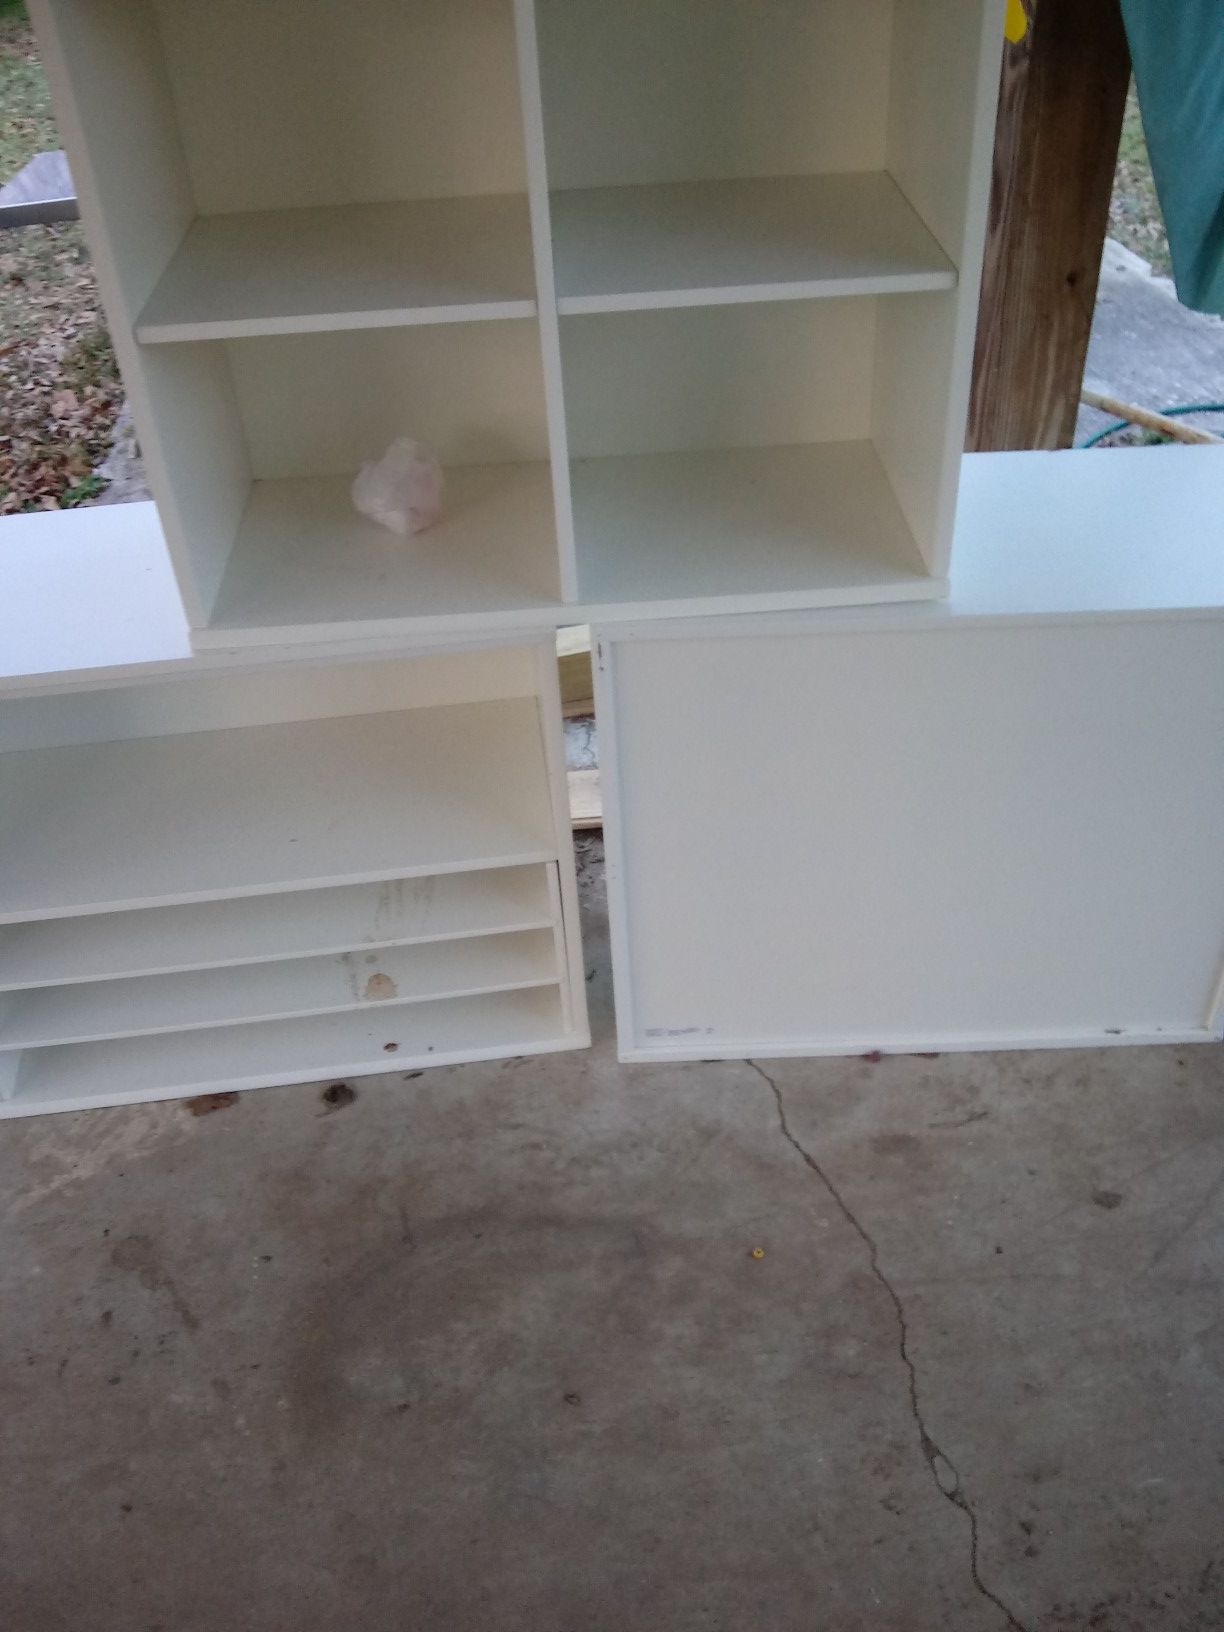 3 white storage shelves.